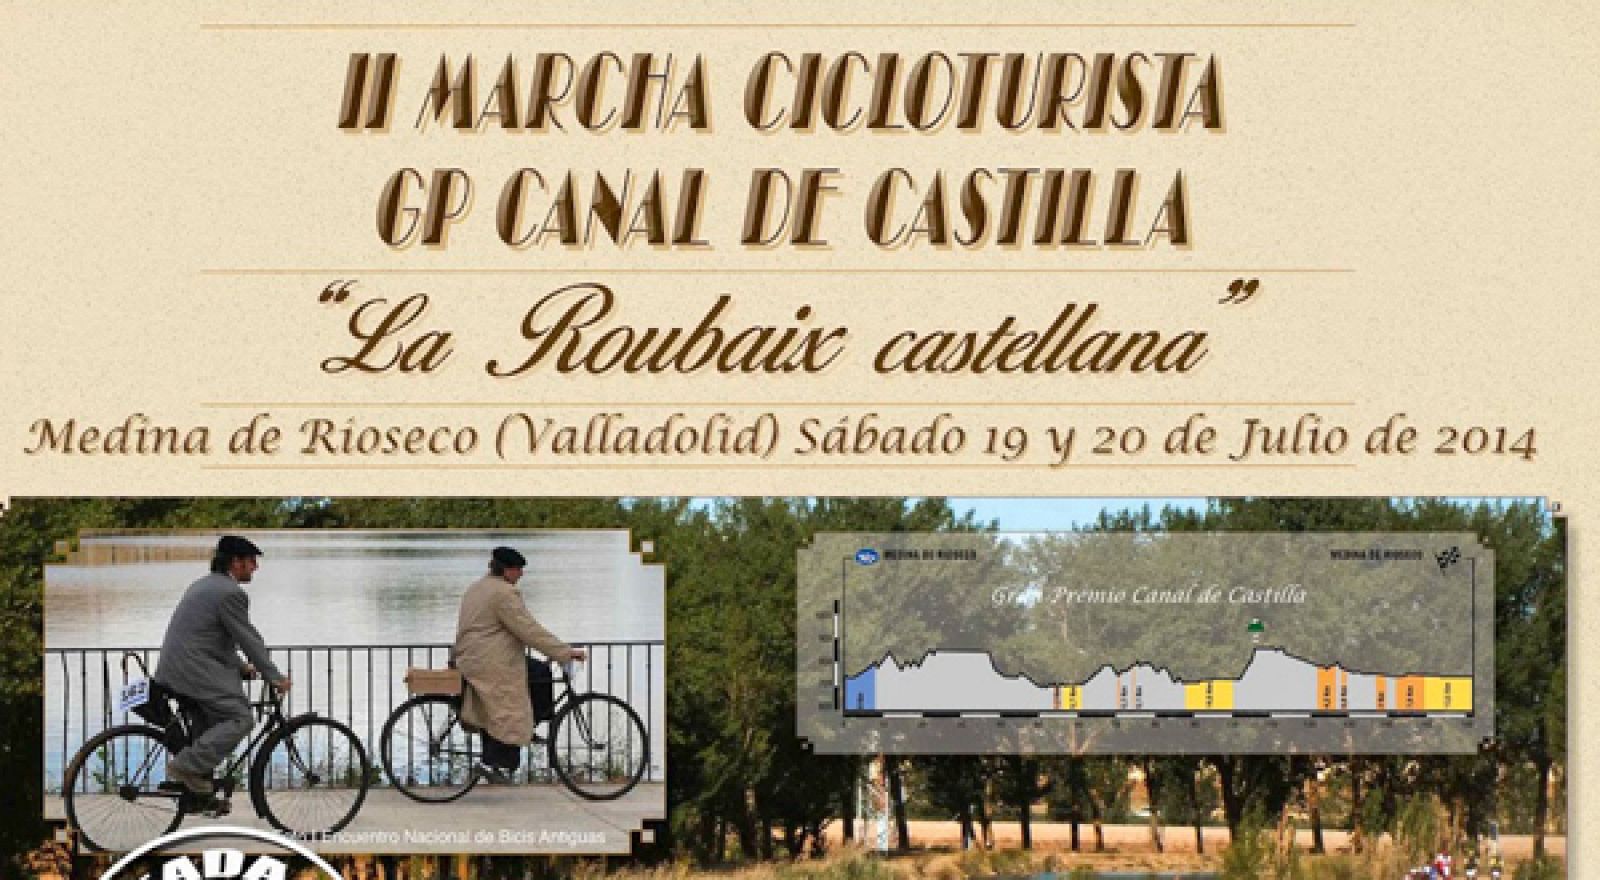 Consigue con RTVE una inscripción para el Gran Premio Canal de Castilla.